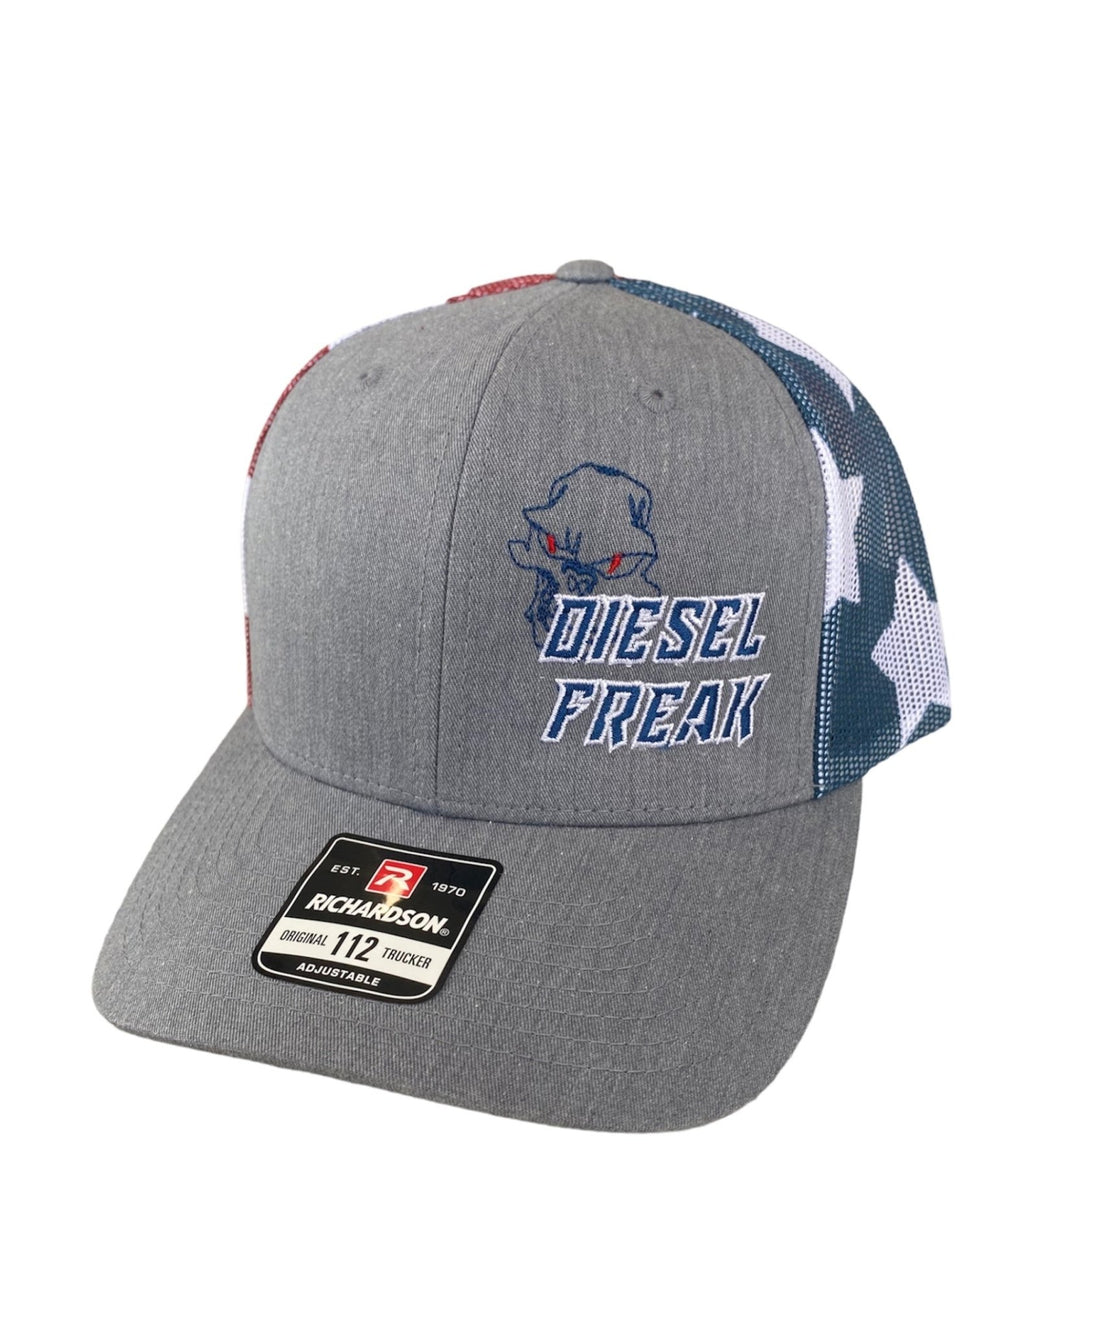 Diesel Freak American Flag Snapback Hat - Diesel Freak